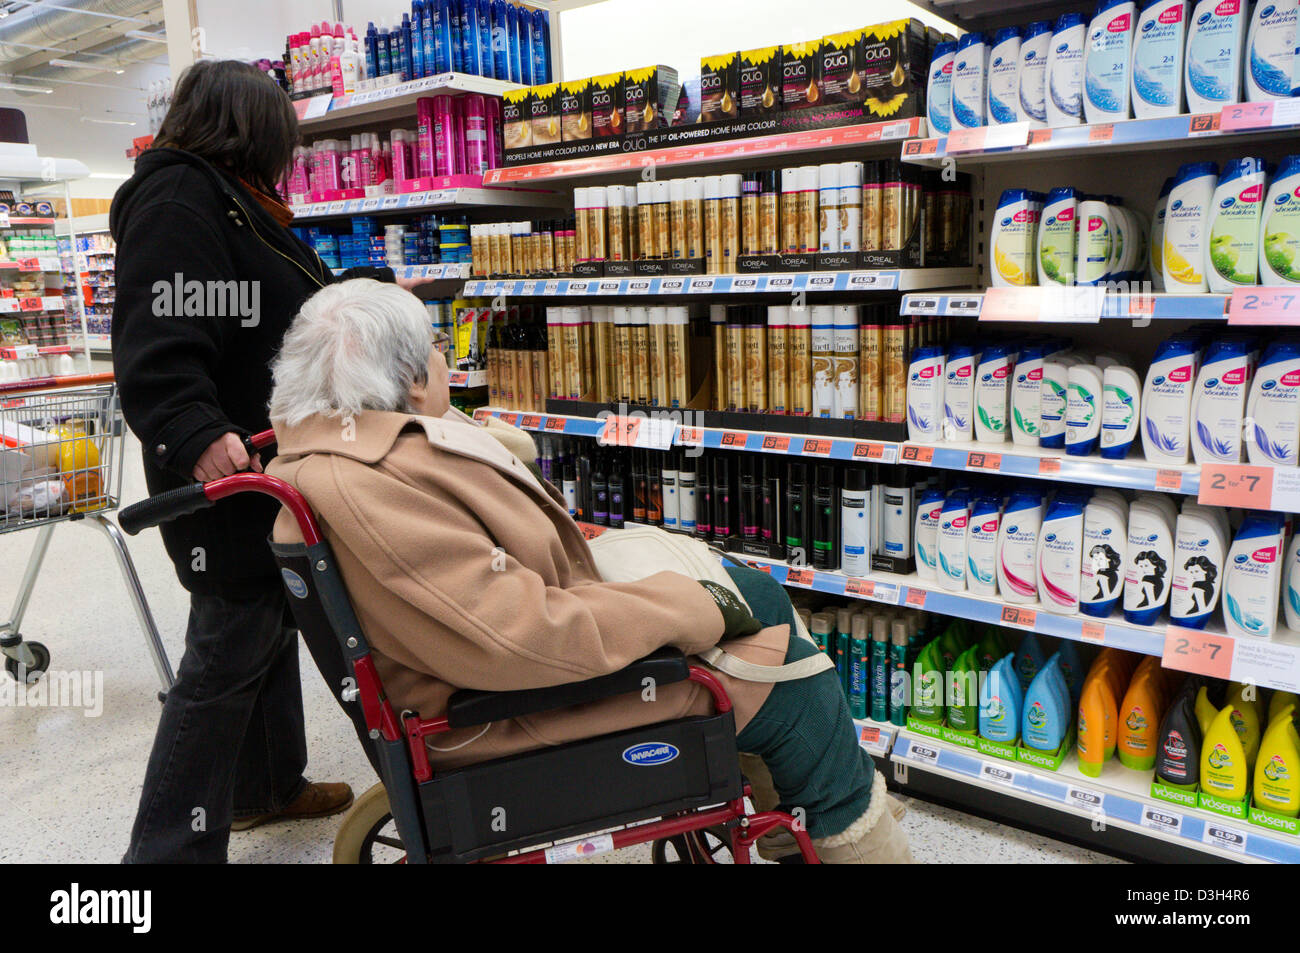 Eine ältere Dame im Rollstuhl und ihre Betreuer oder Helfer Blick auf Produkte Haare und Shampoo in einem Supermarkt. Stockfoto